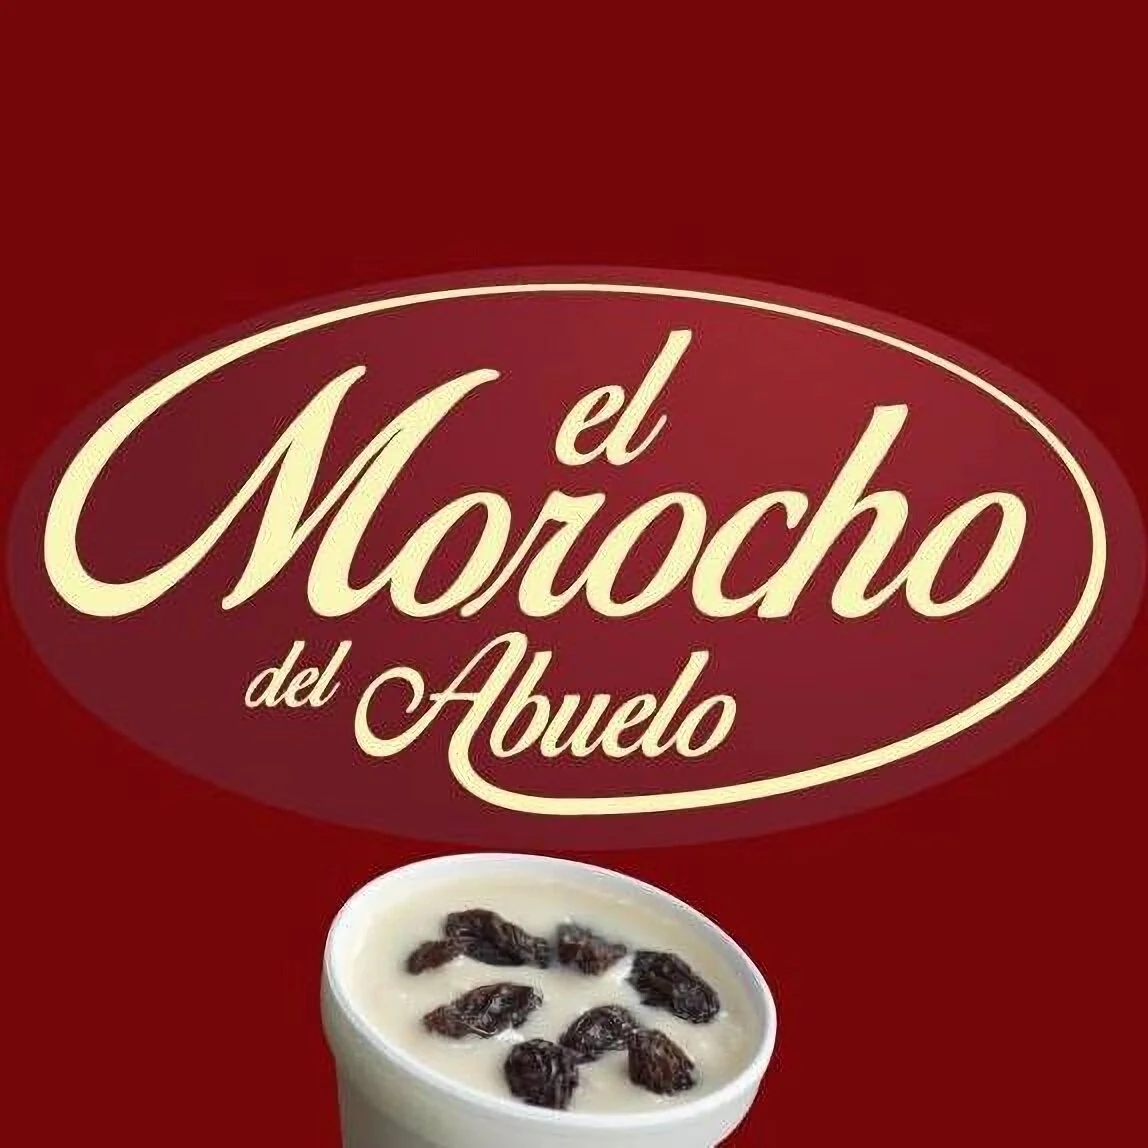 Restaurantes-el-morocho-del-abuelo-17146